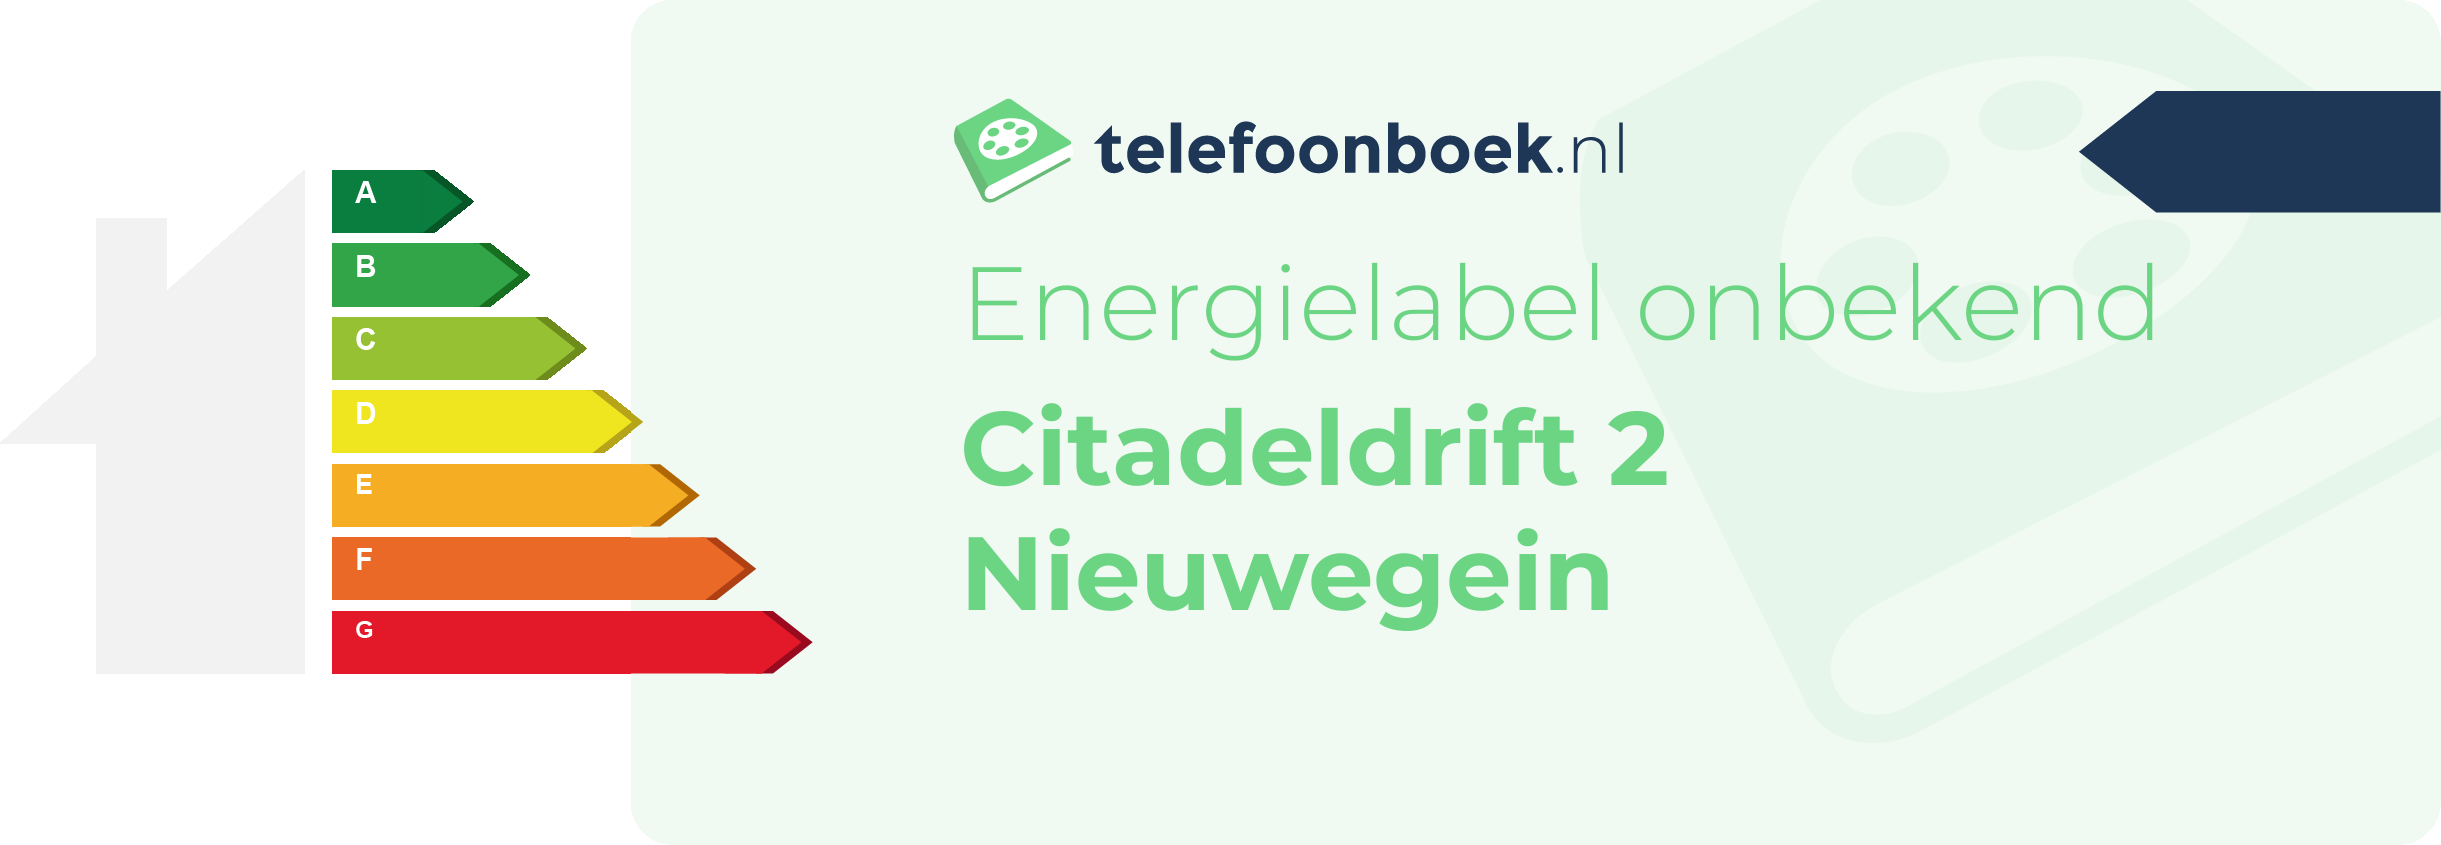 Energielabel Citadeldrift 2 Nieuwegein